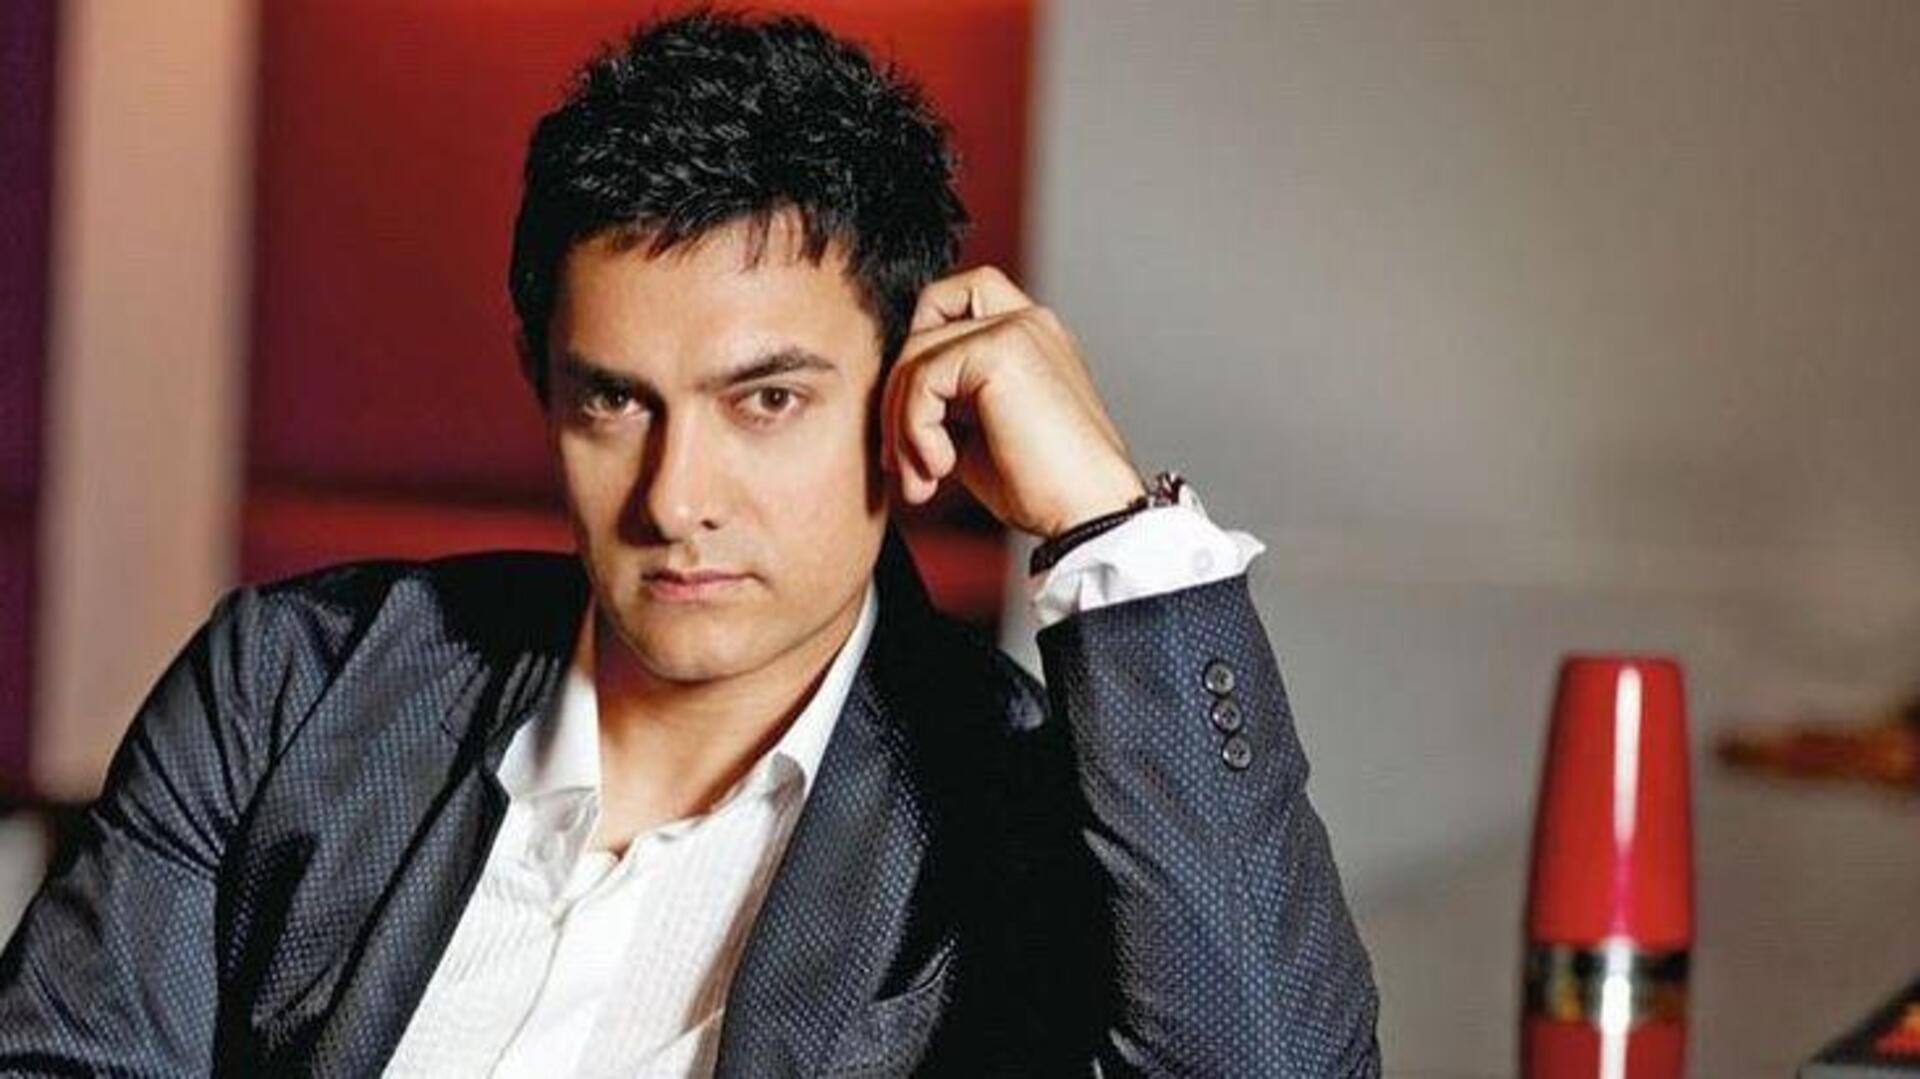 आमिर खान 'लाल सिंह चड्ढा' पर बोले- शुक्र है सारी गलतियां एक ही फिल्म में हुईं